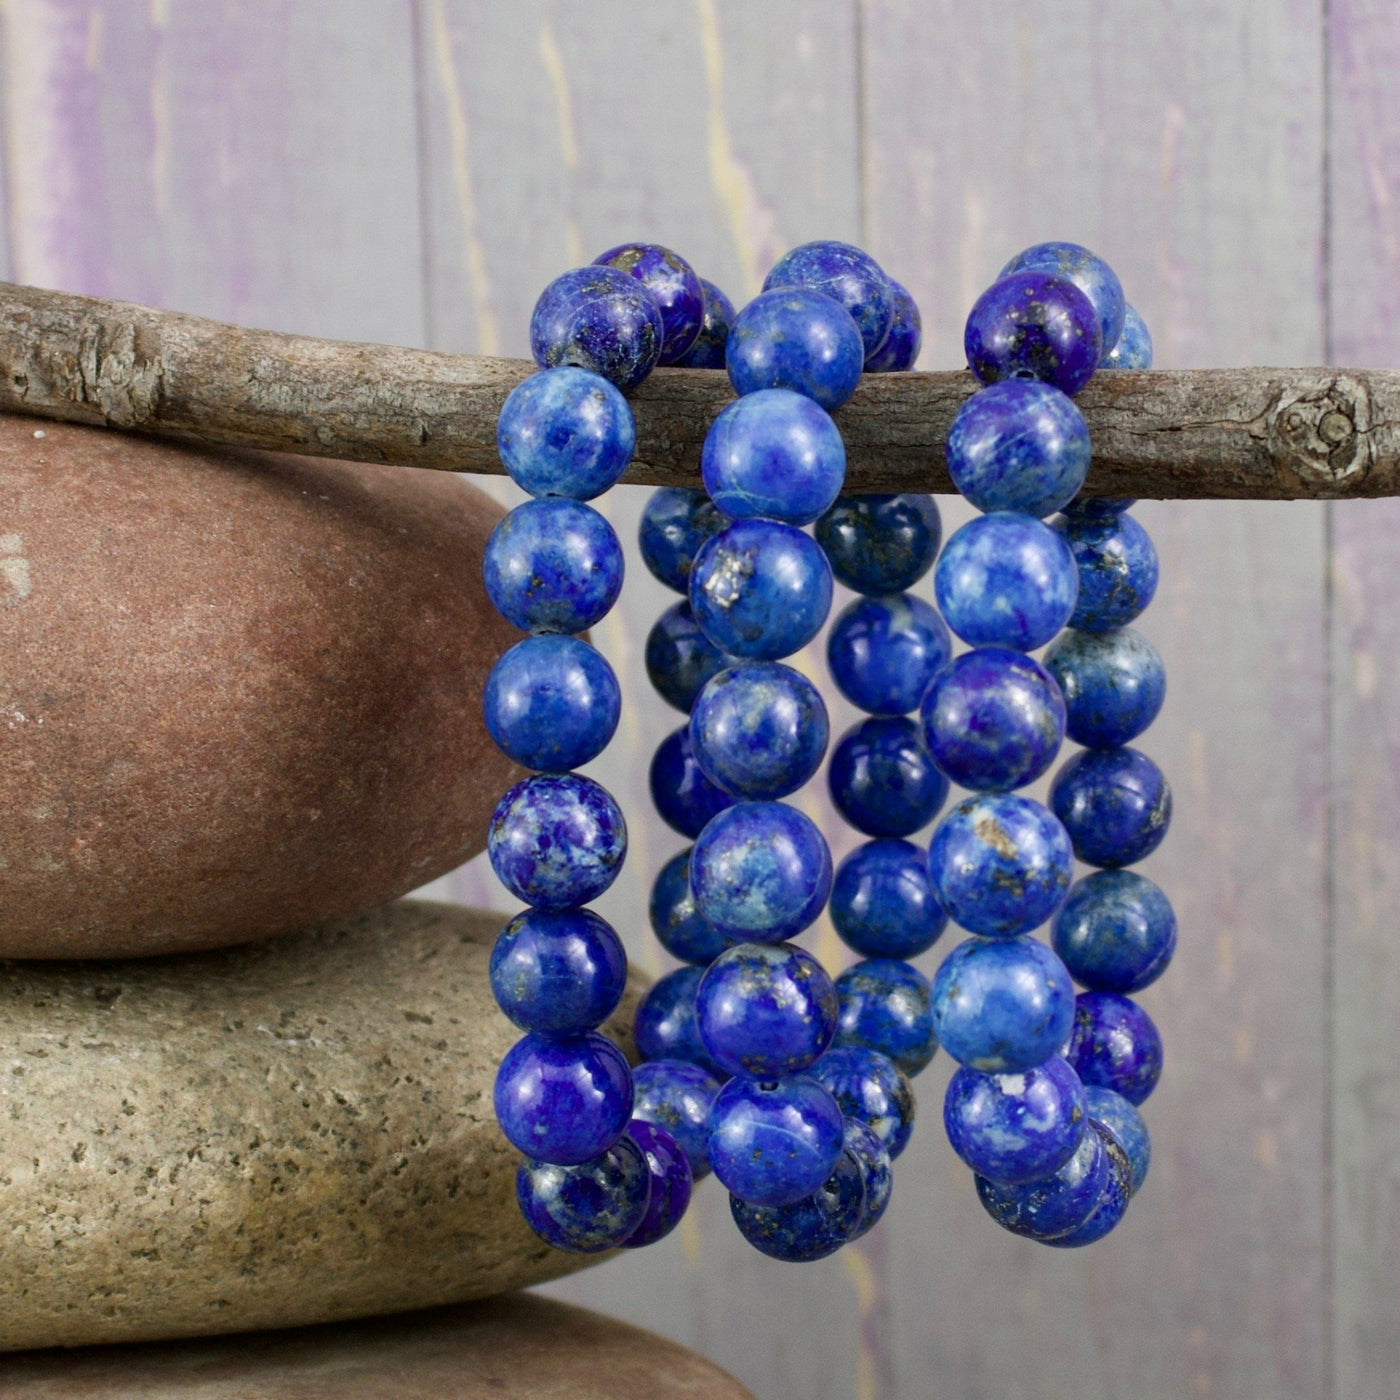 Lazuli Bracelet, 10mm Polished Round Beads